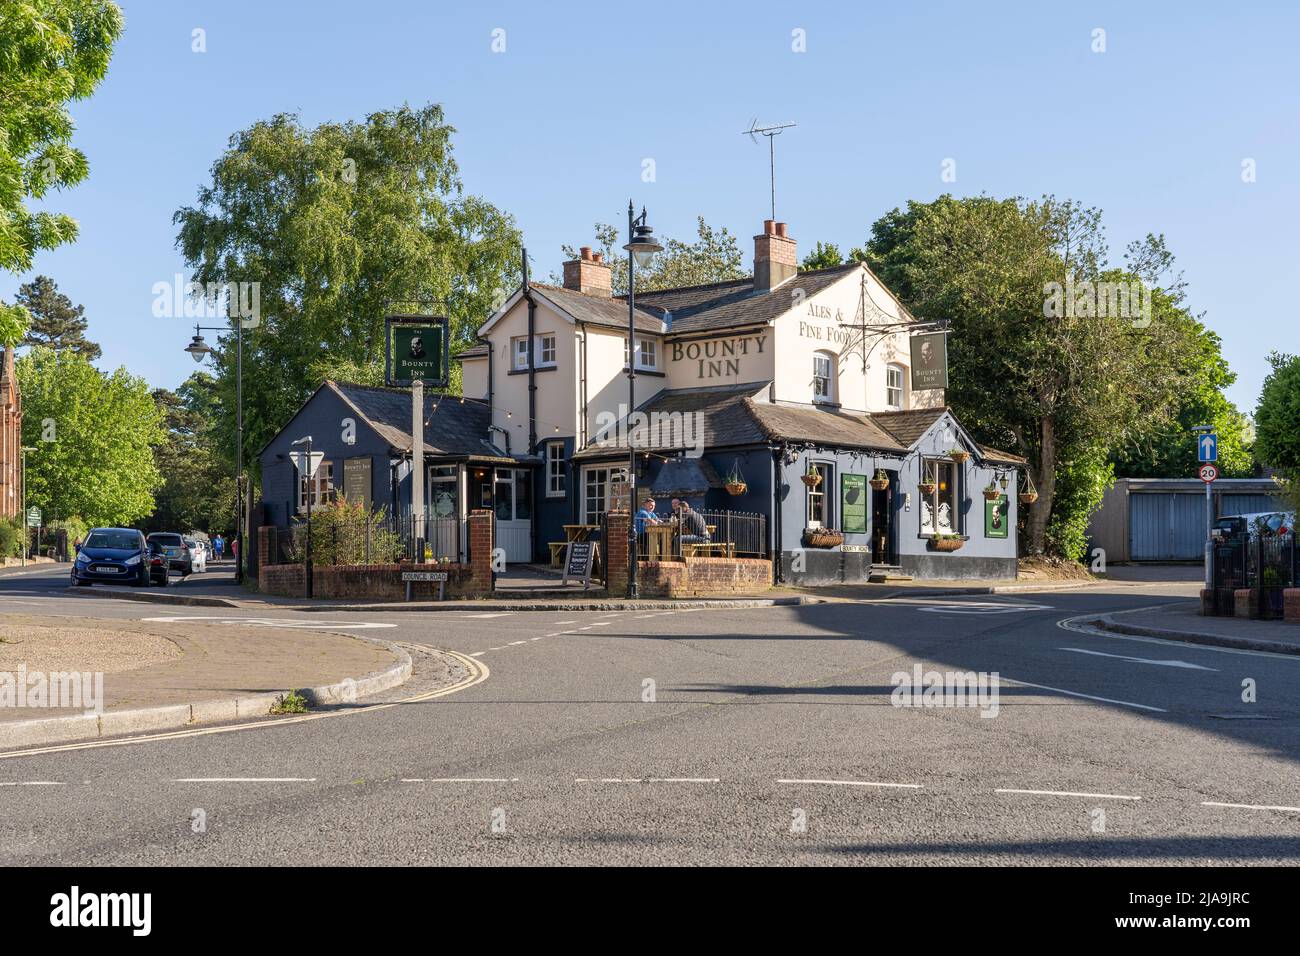 Le Bounty Inn est un pub populaire du centre-ville de Basingstoke, datant du milieu du siècle 18th. Hampshire, Angleterre. Thème - pub et industrie hôtelière Banque D'Images